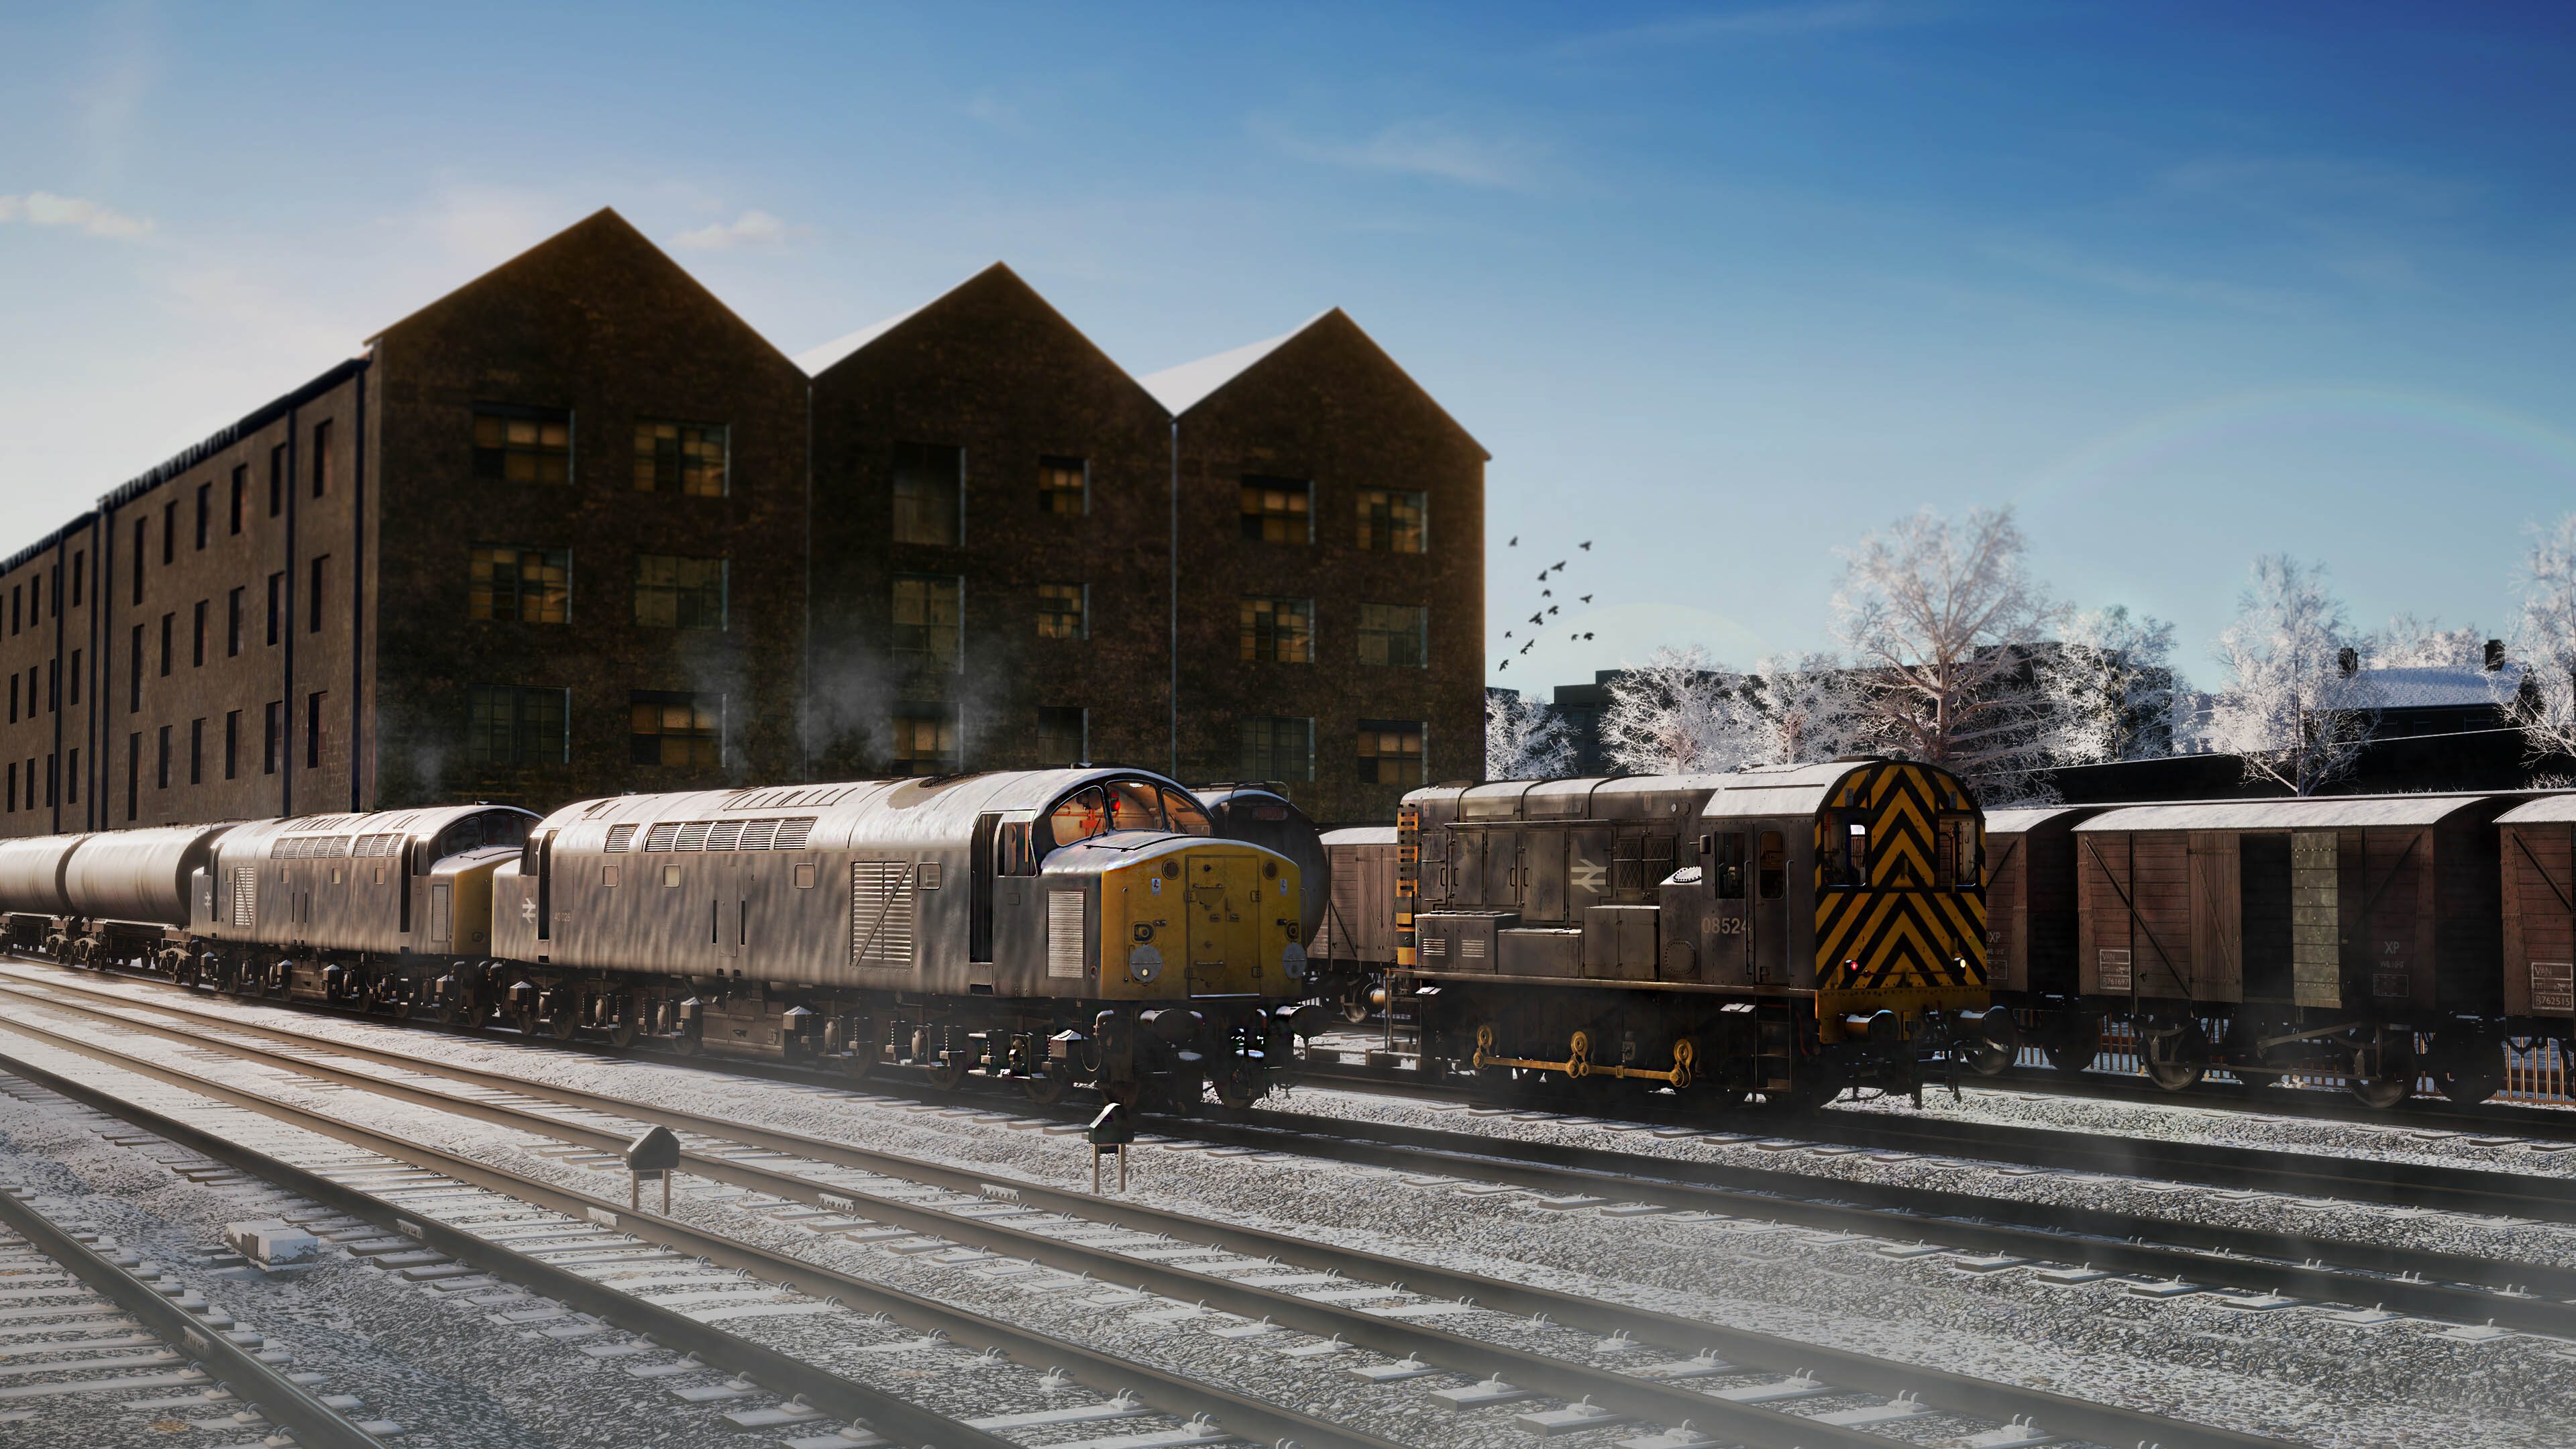 Train Sim World: BR Heavy Freight Pack Loco Add-On